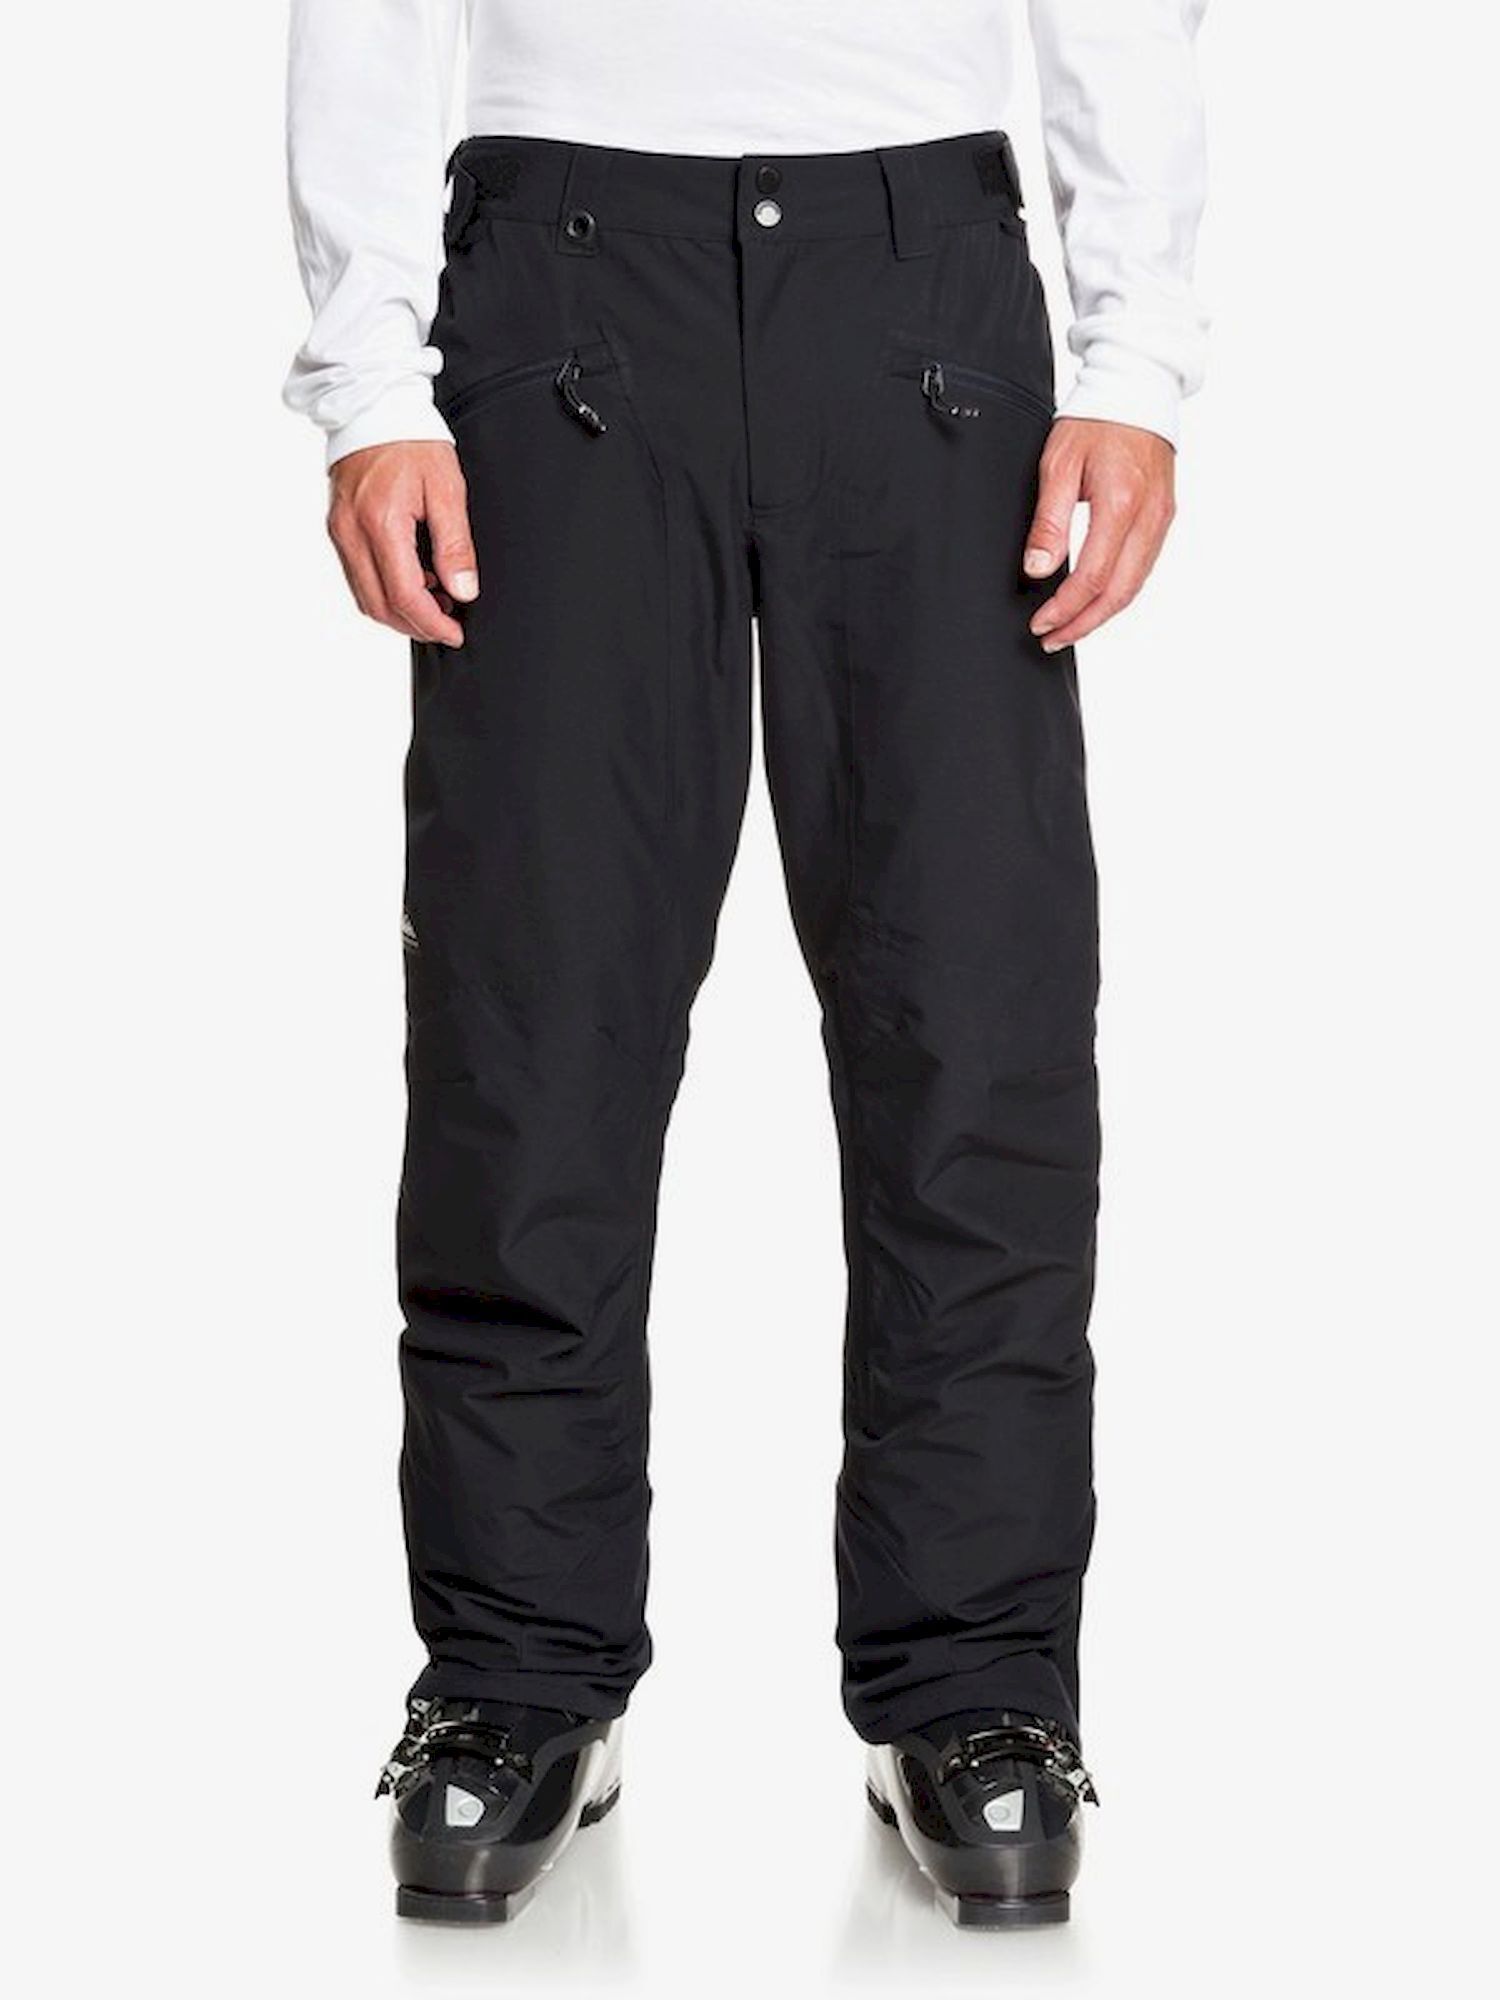 Quiksilver Boundry Pant - Ski trousers - Men's | Hardloop